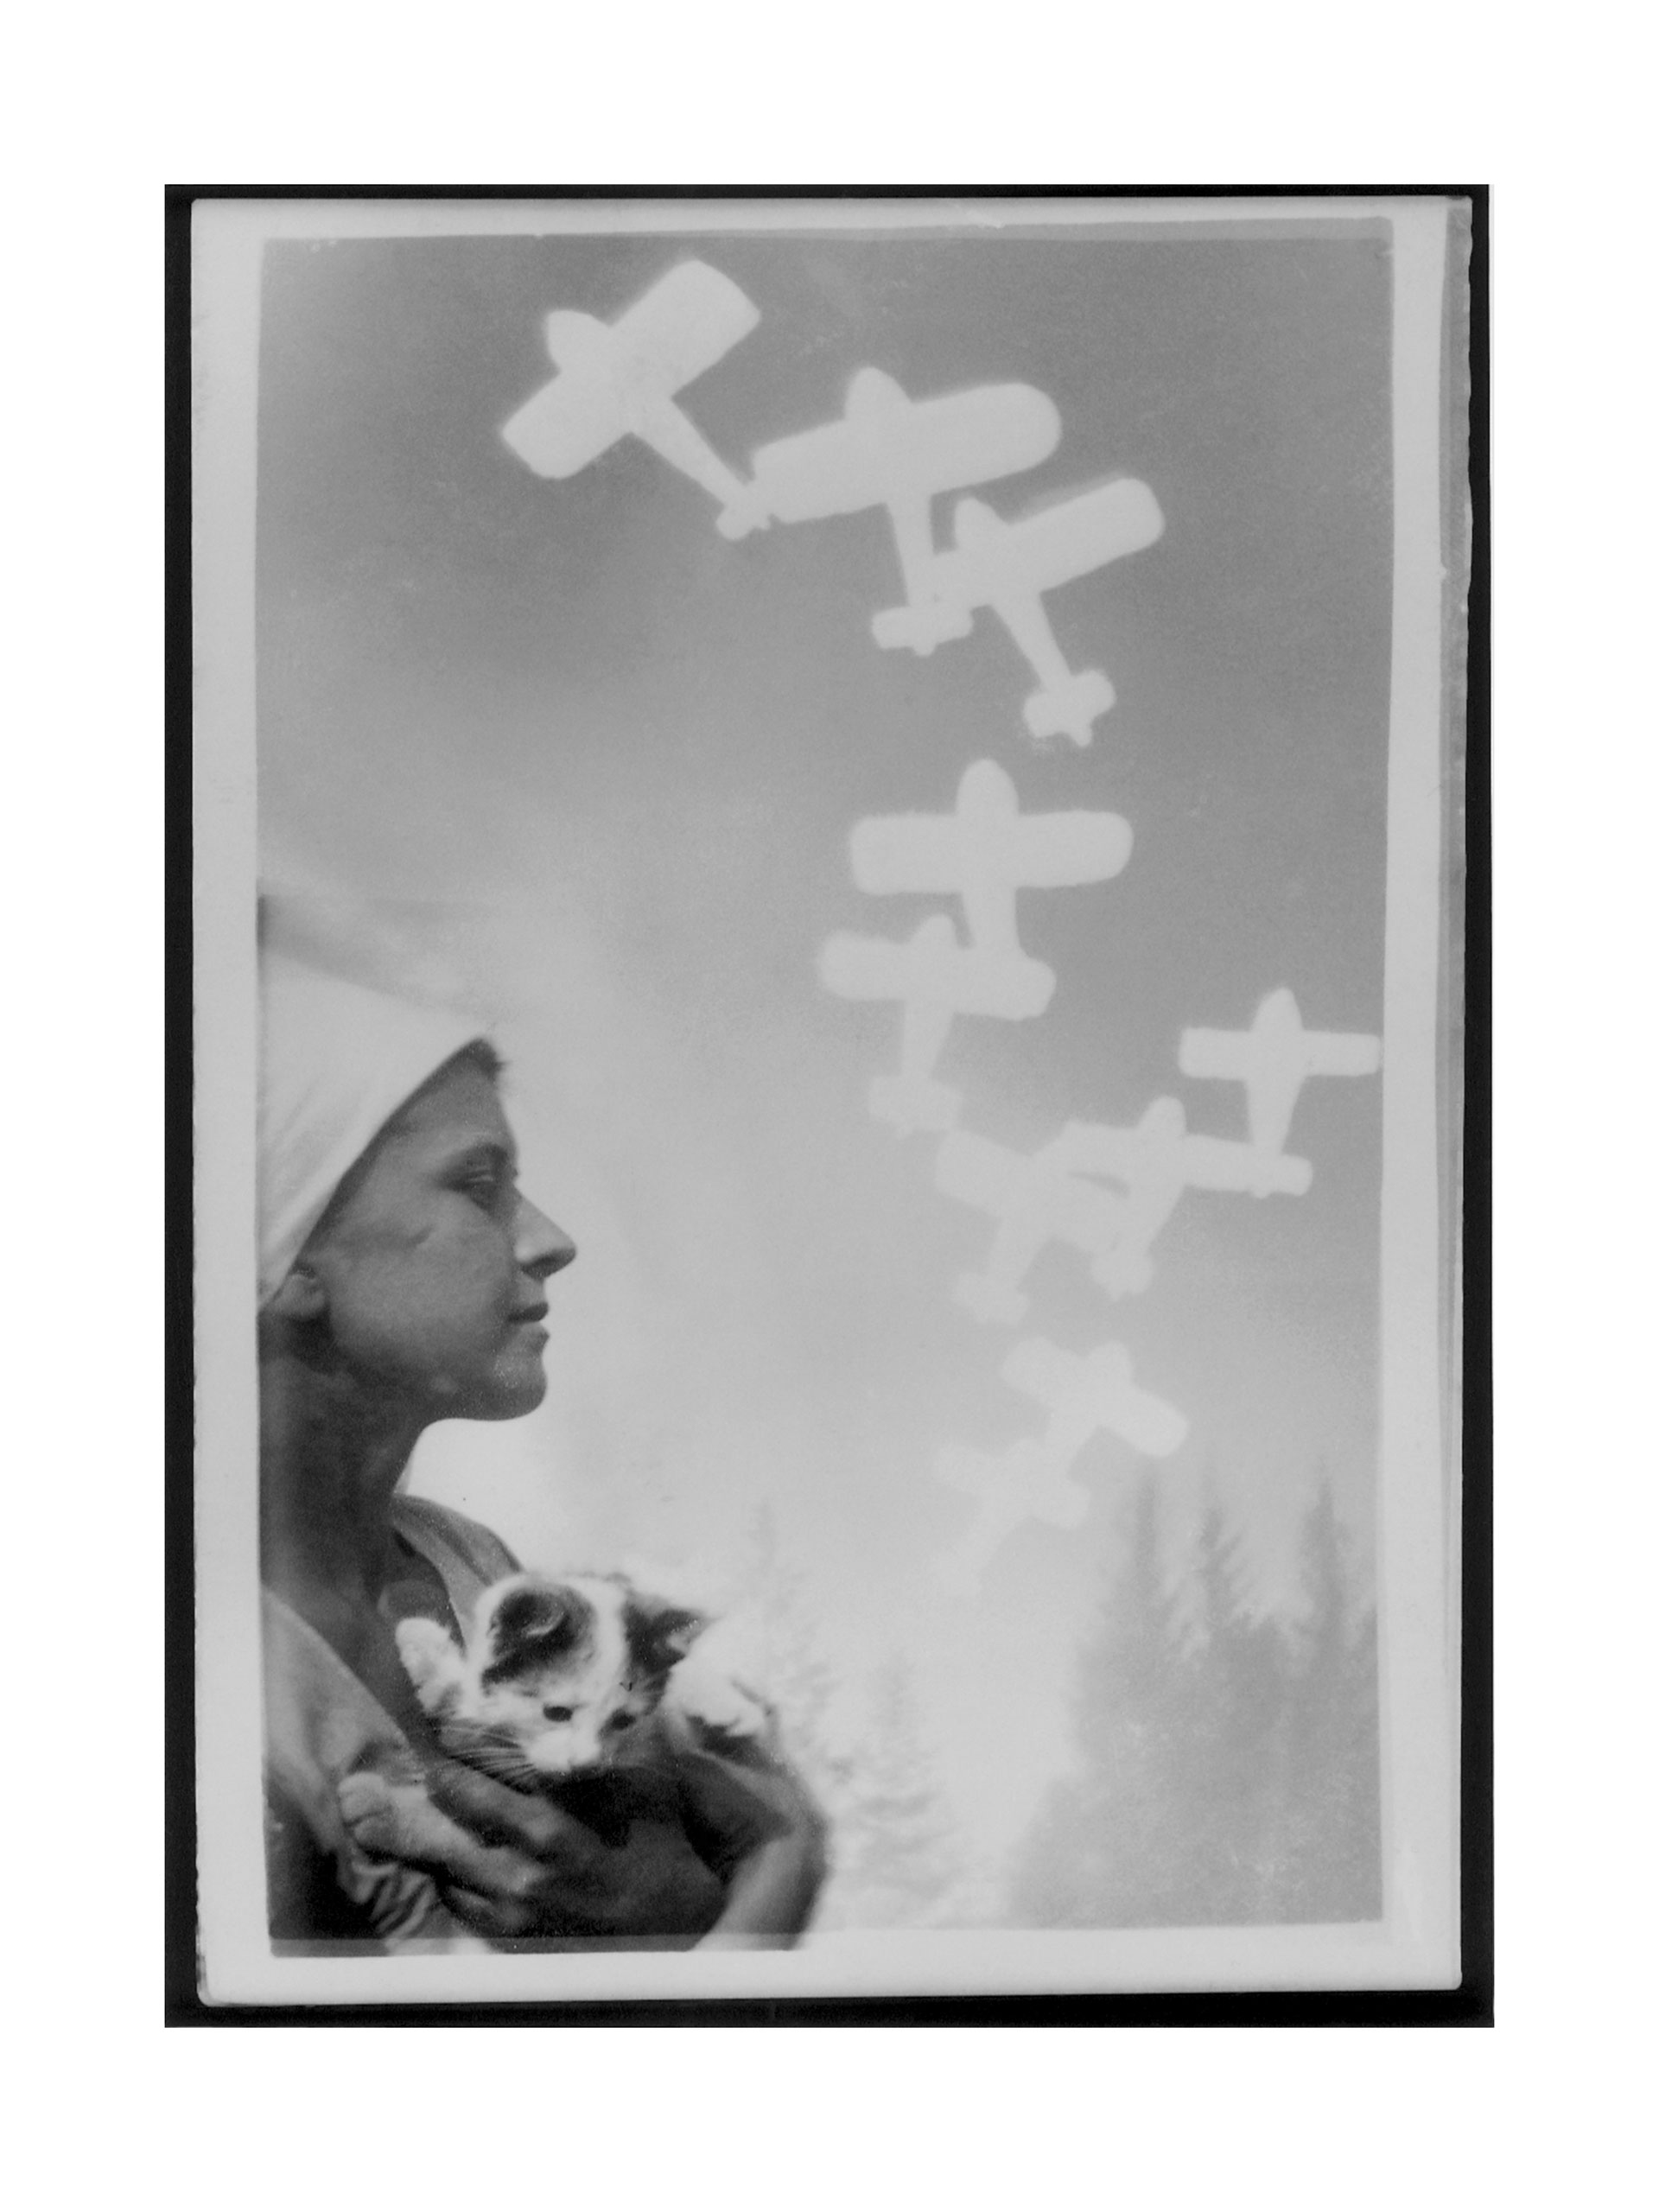 Image of Fotografika - Lektuveliai/ Photographics - Little Planes by Domicele Tarabildiene